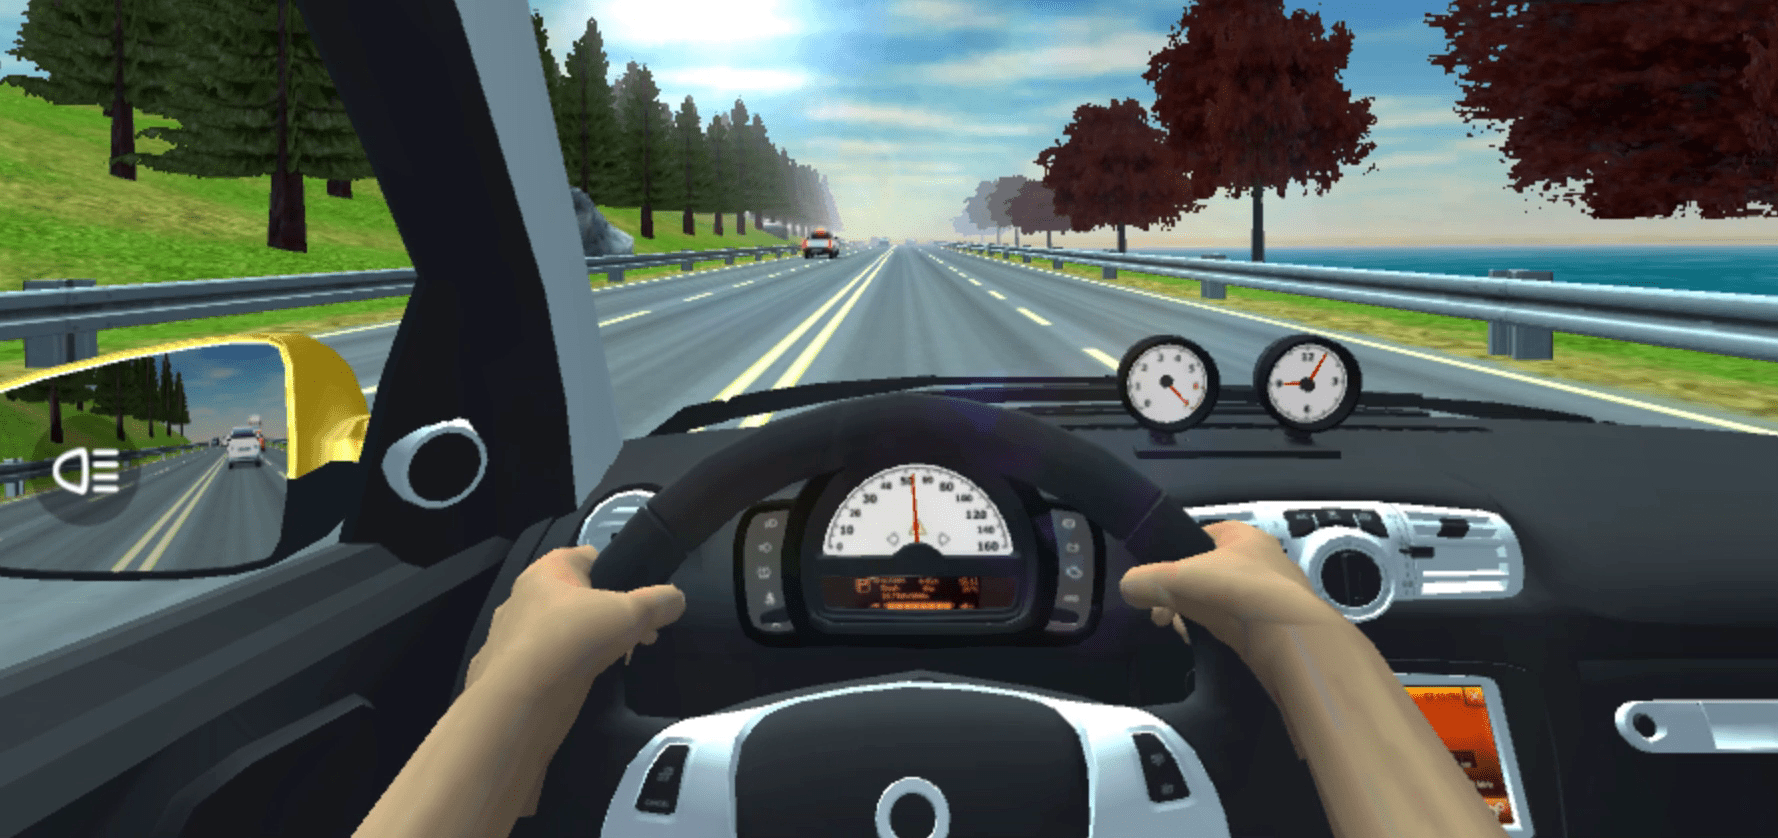 Traffic Jam 3D Screenshot 6